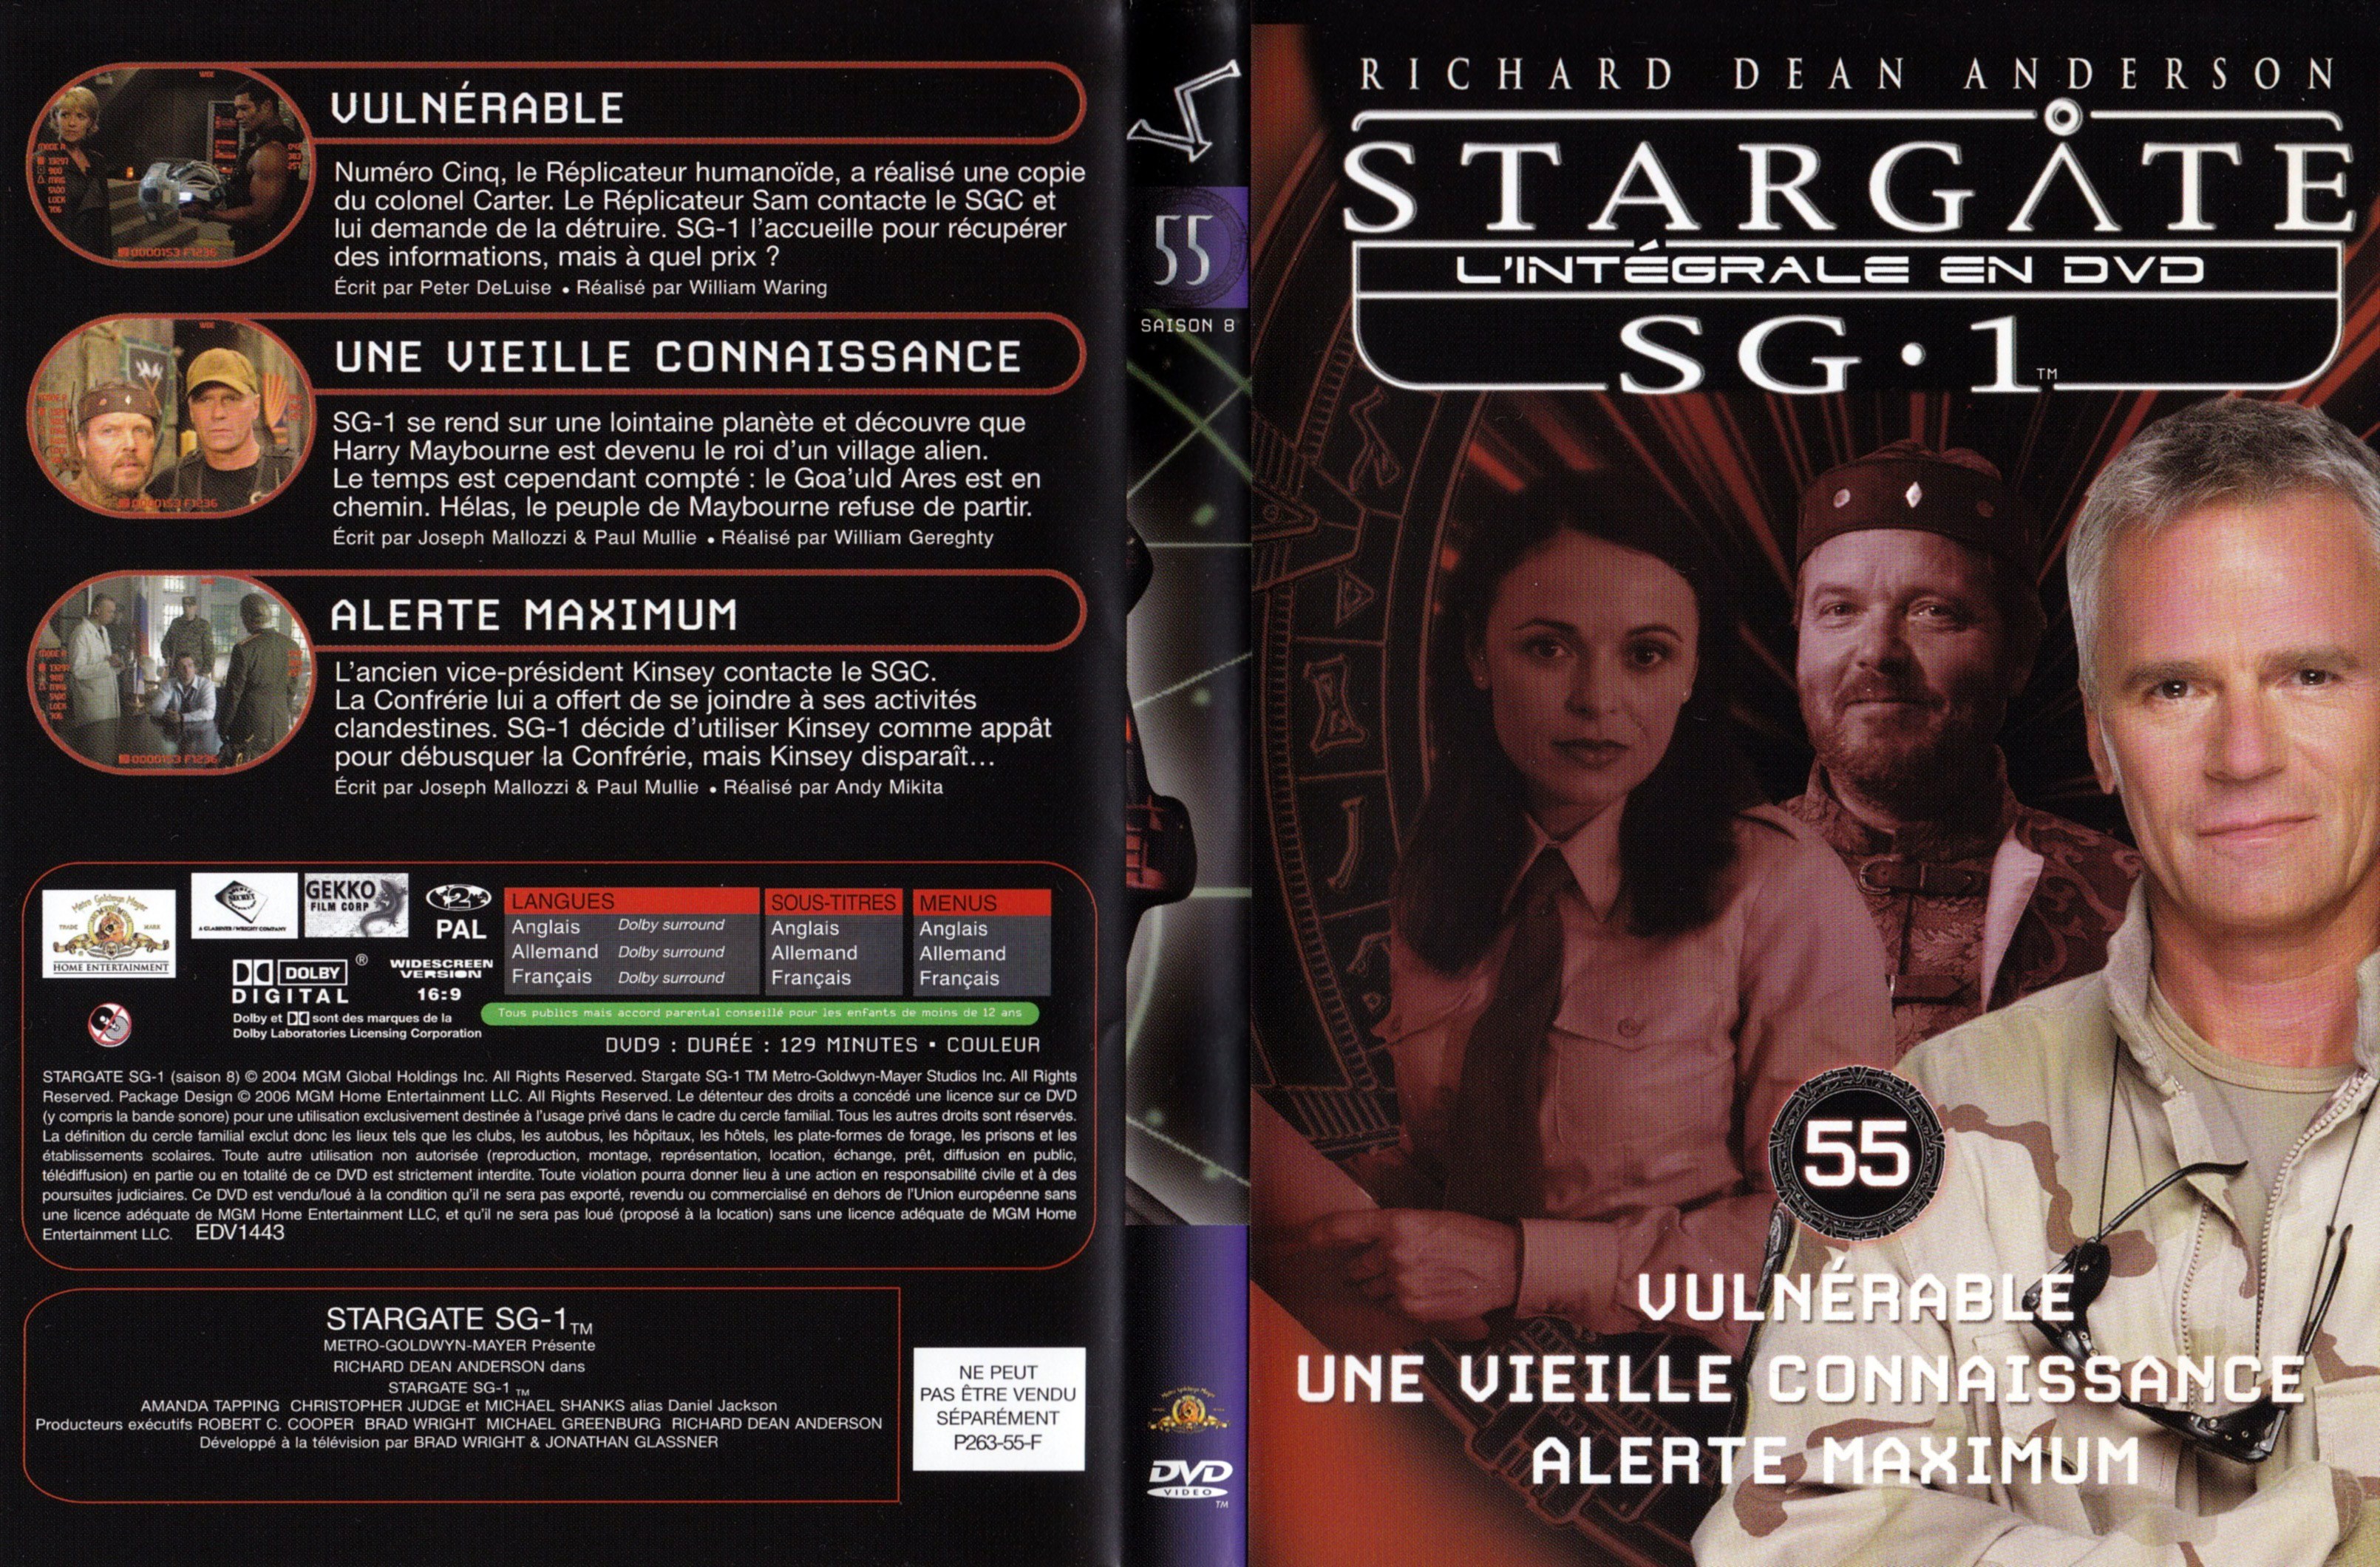 Jaquette DVD Stargate SG1 Intgrale Saison 8 vol 55